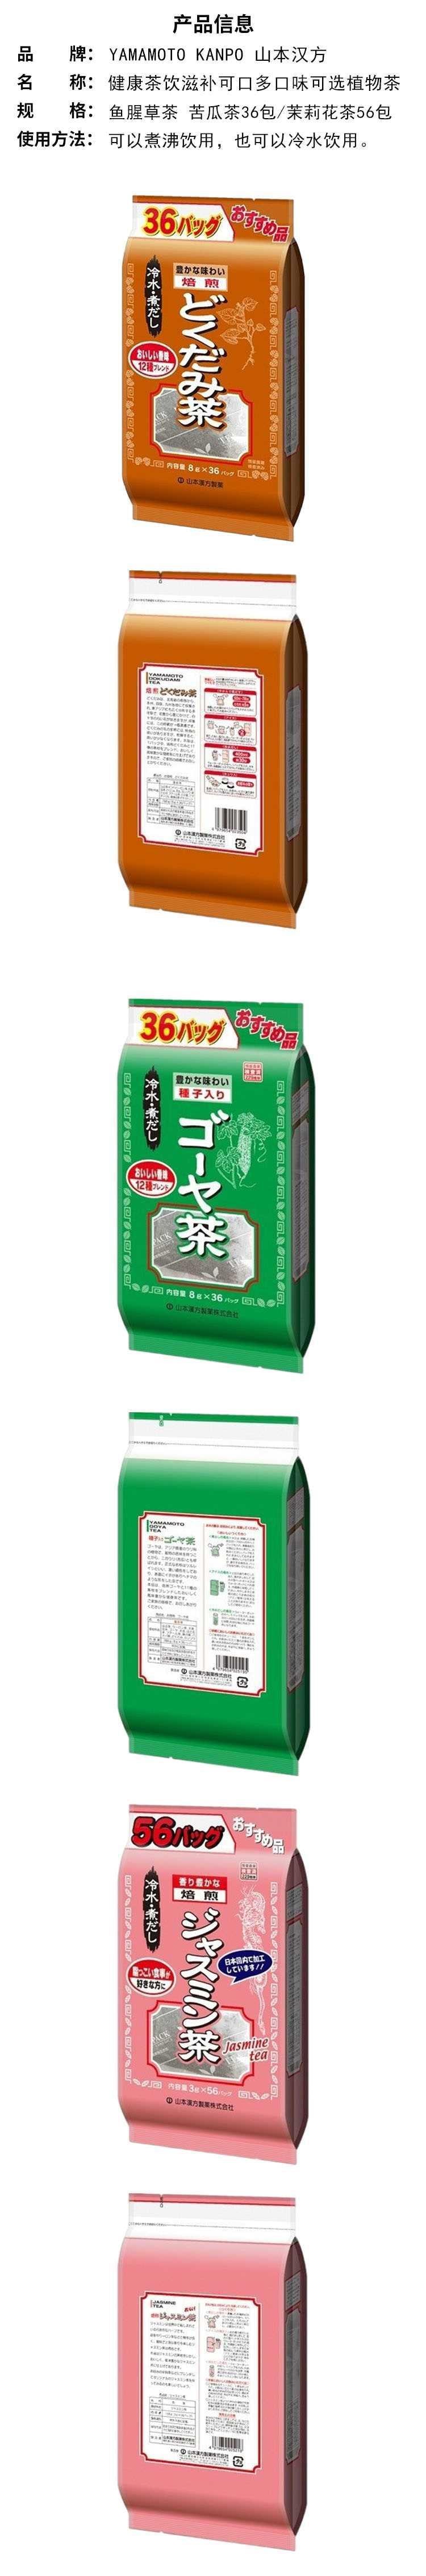 【日本直邮】YAMAMOTO山本汉方制药 混合风味苦瓜茶 8g*36包